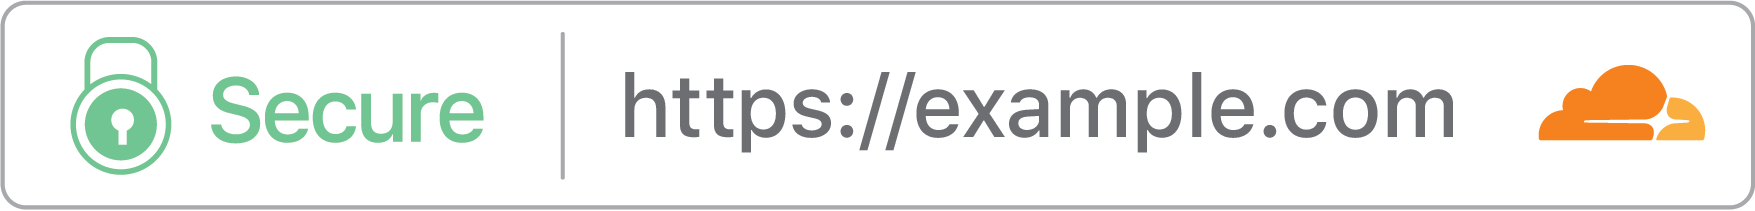 多域 SSL 证书